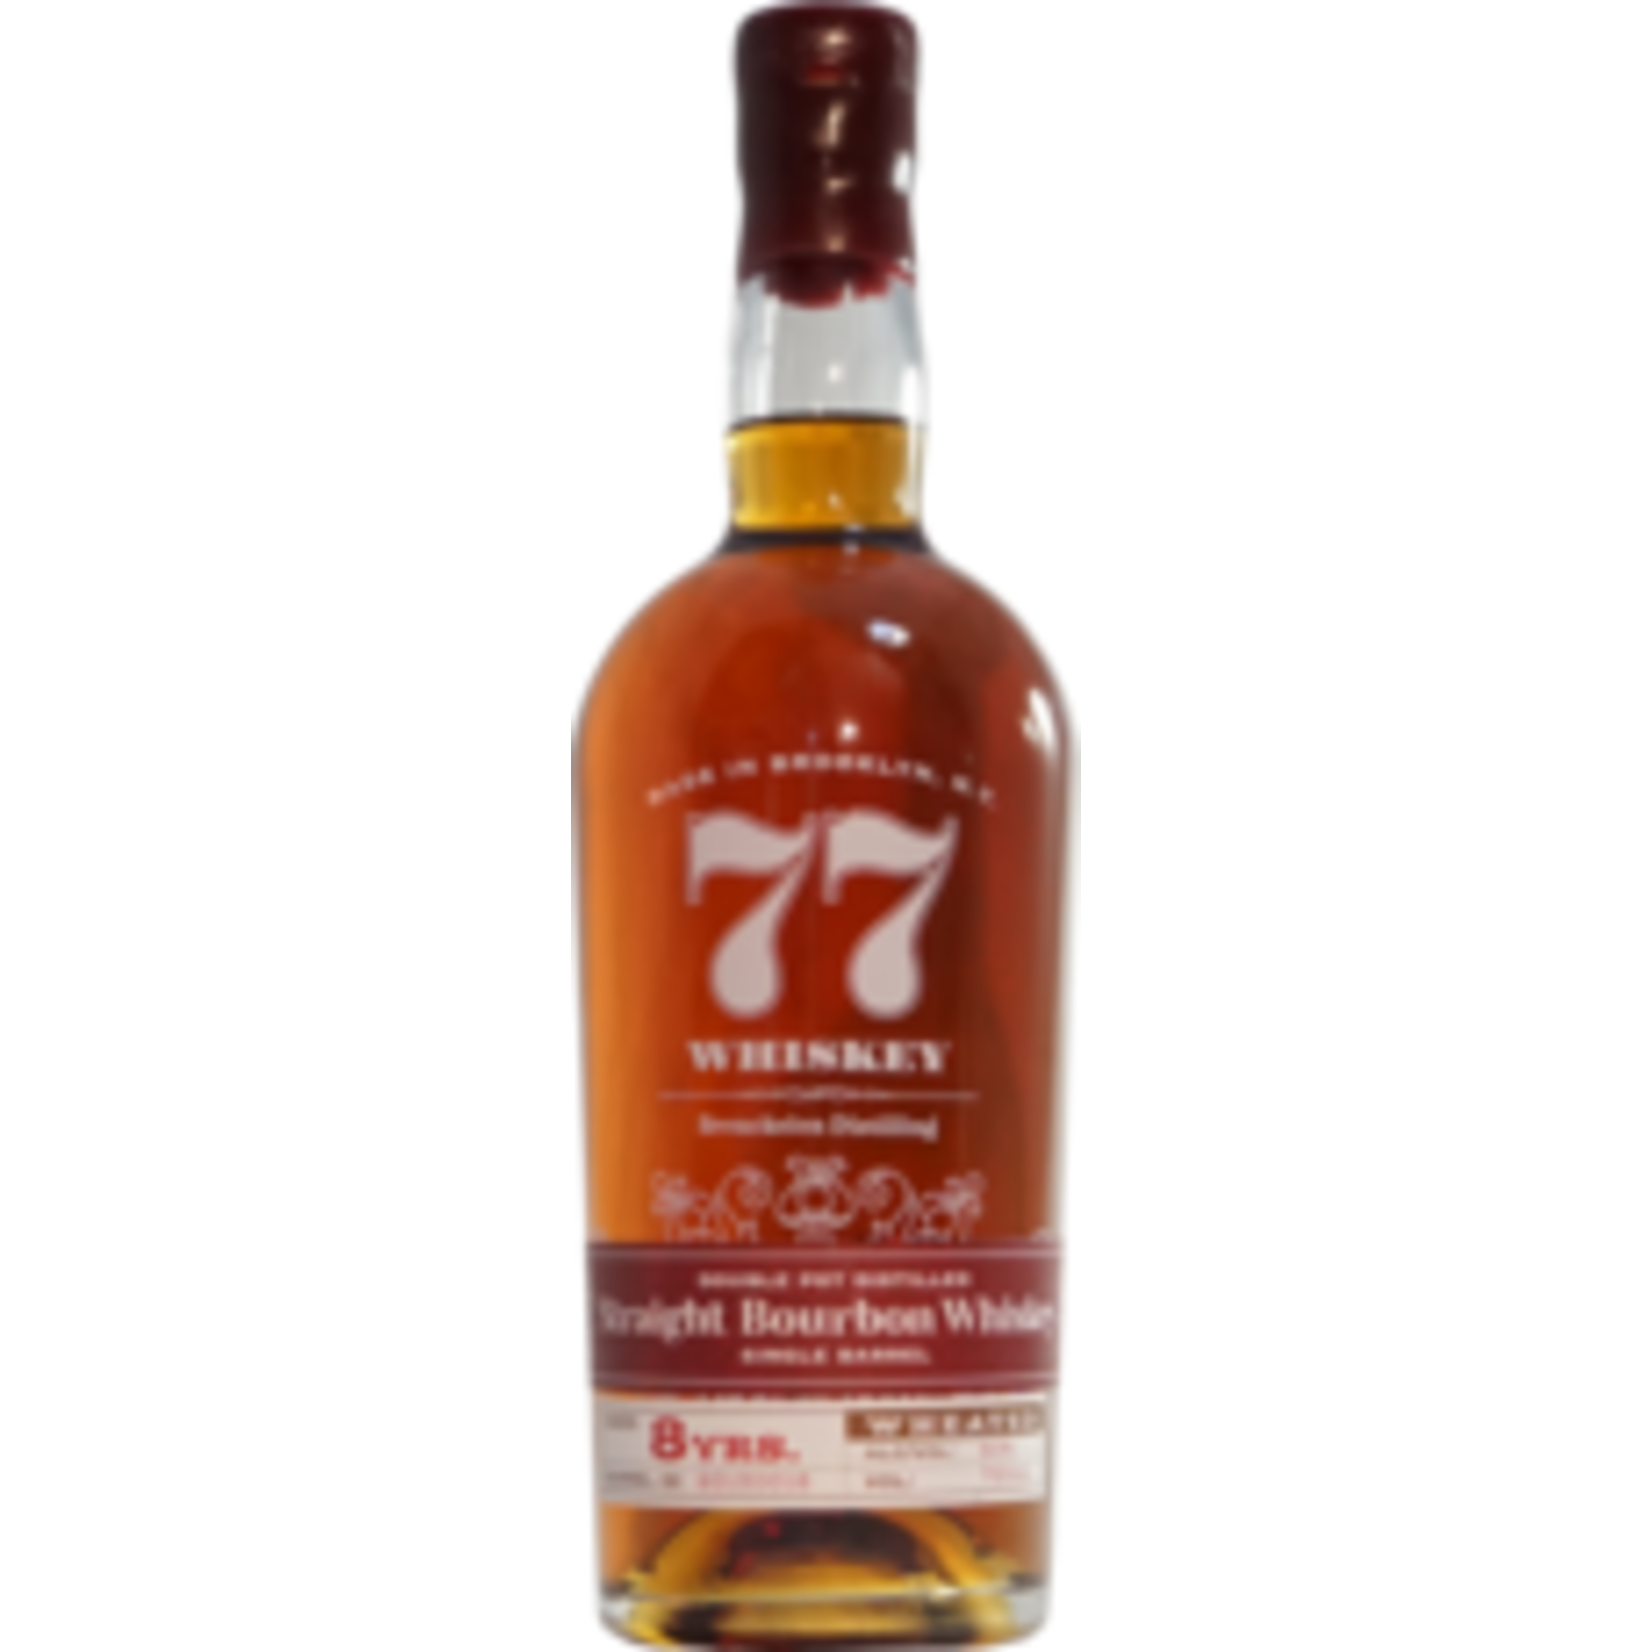 77 The New York 8 yr Wheated Bourbon